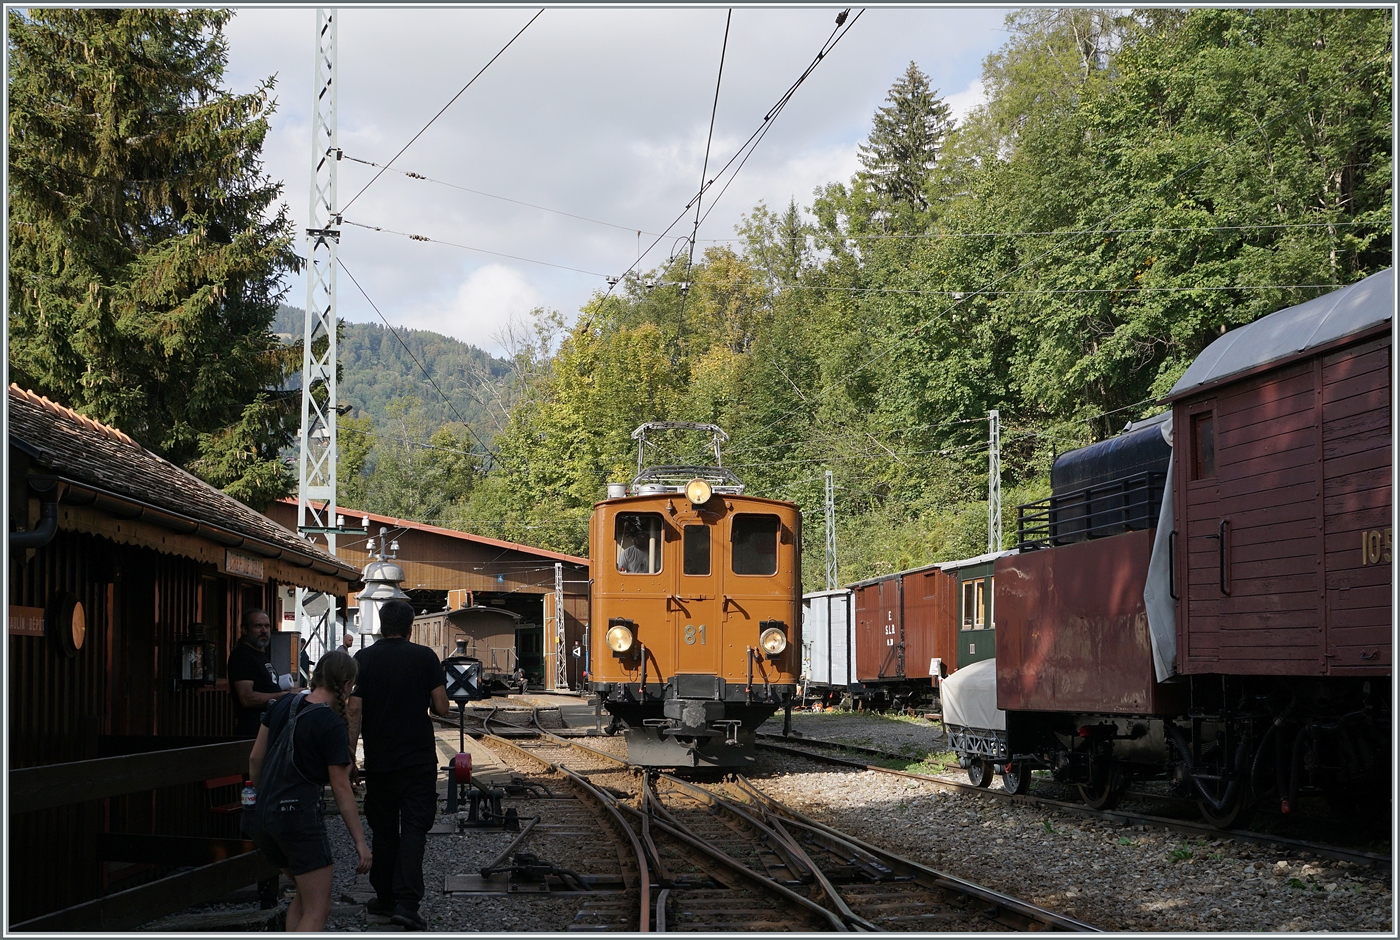 Die Bernina Bahn RhB Ge 4/4 81 der Blonay-Chamby Bahn rangiert in Chaulin um ihren Zug nach Blonay bereit zu stellen.

30. Sept. 2023